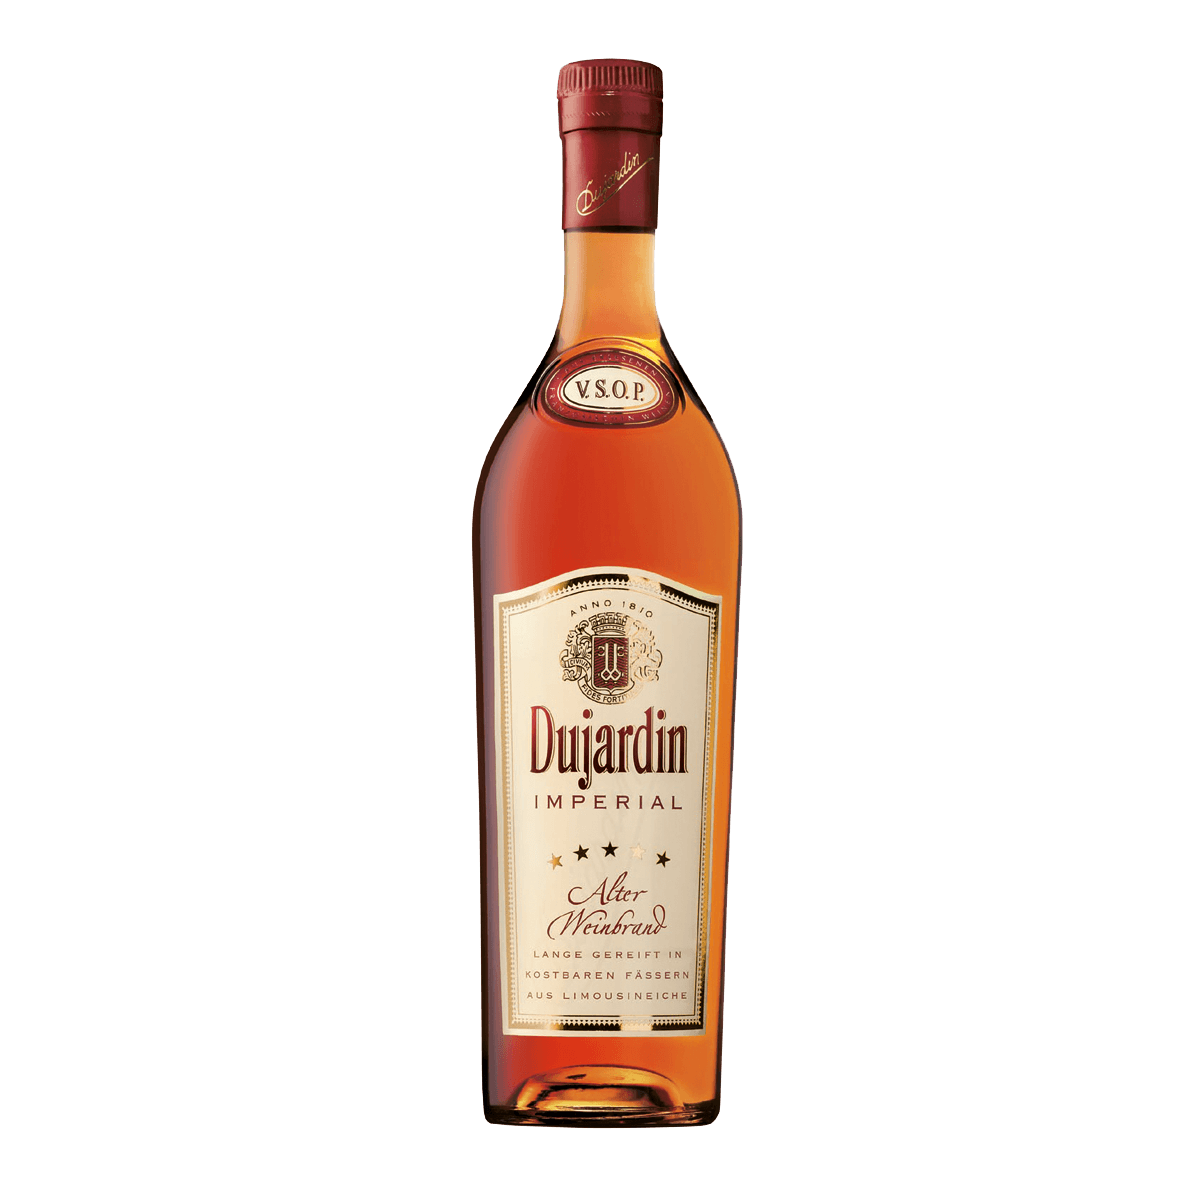 Dujardin cognac - Die hochwertigsten Dujardin cognac im Vergleich